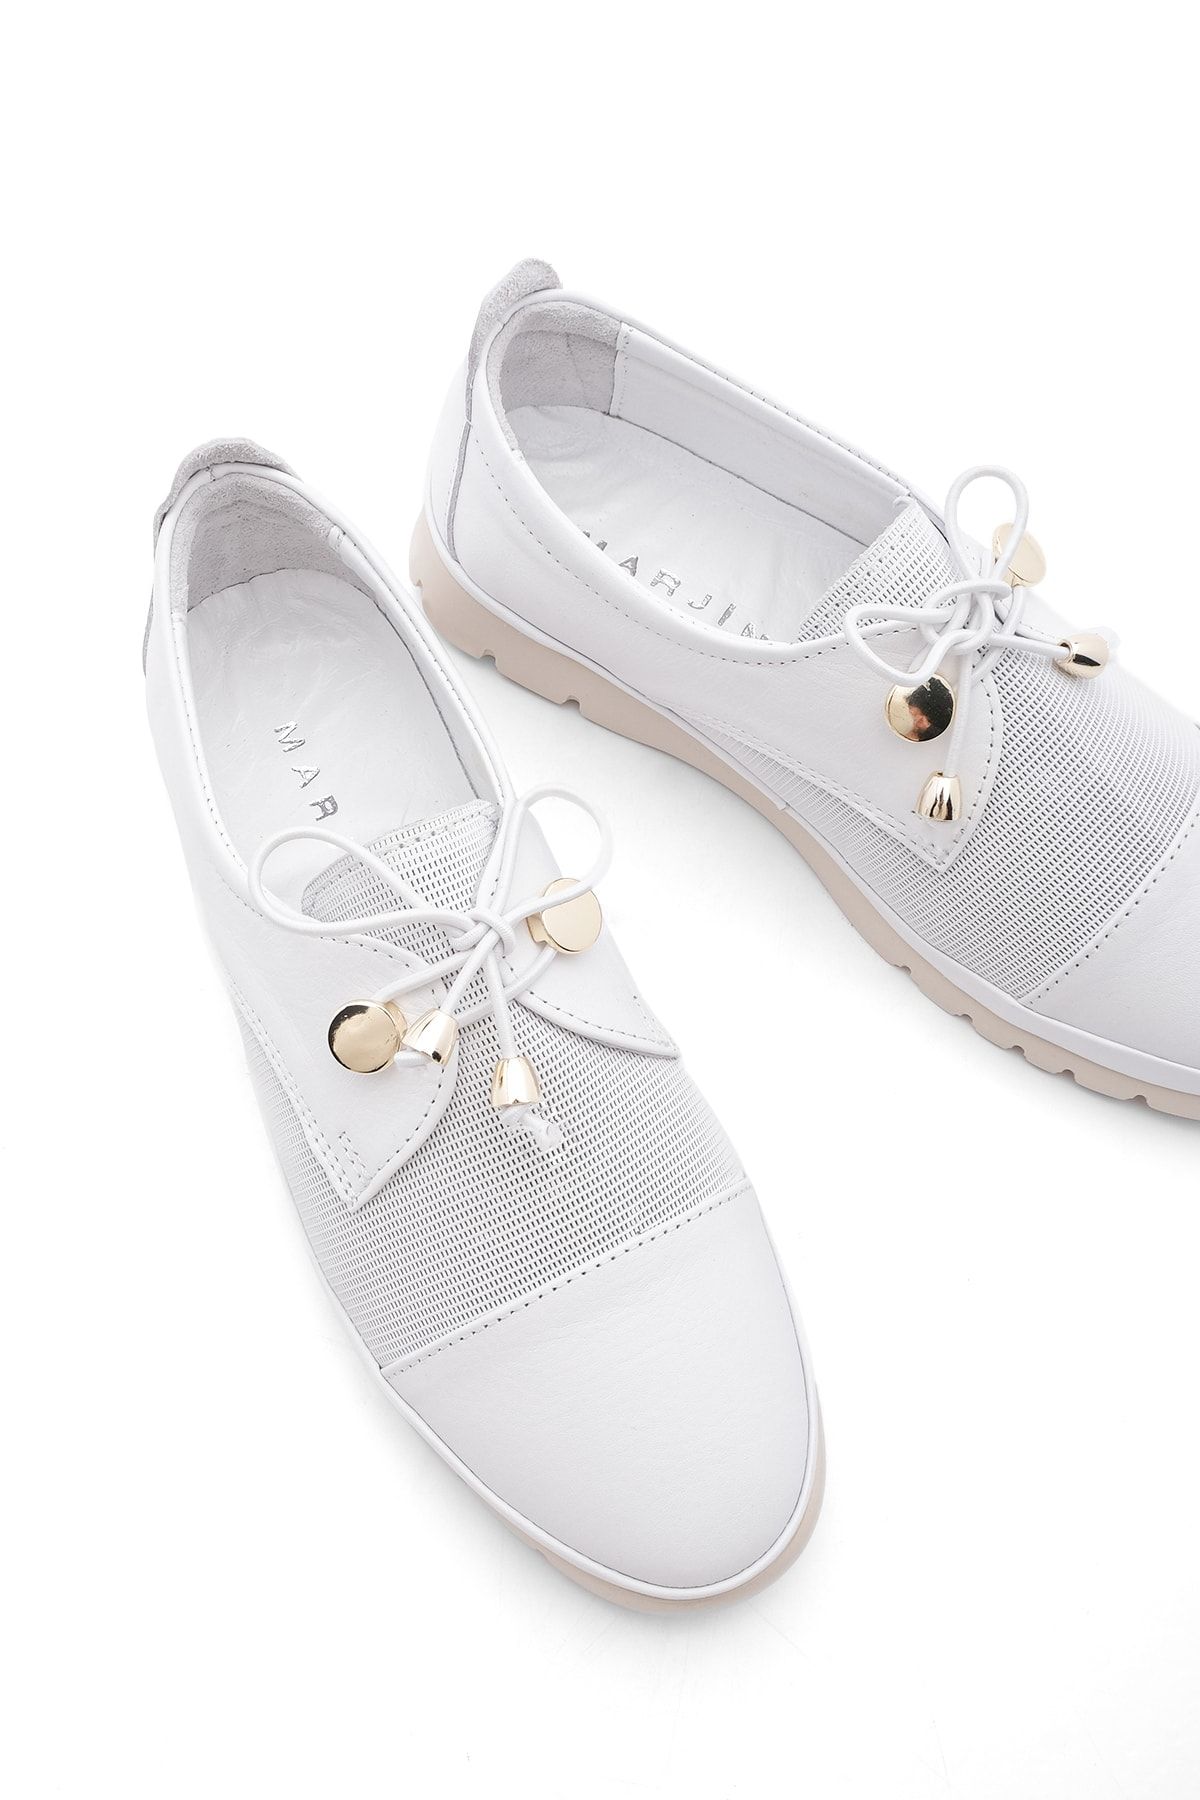 Marjin Kadın Hakiki Deri Comfort Günlük Ayakkabı Bağcıklı Demas beyaz